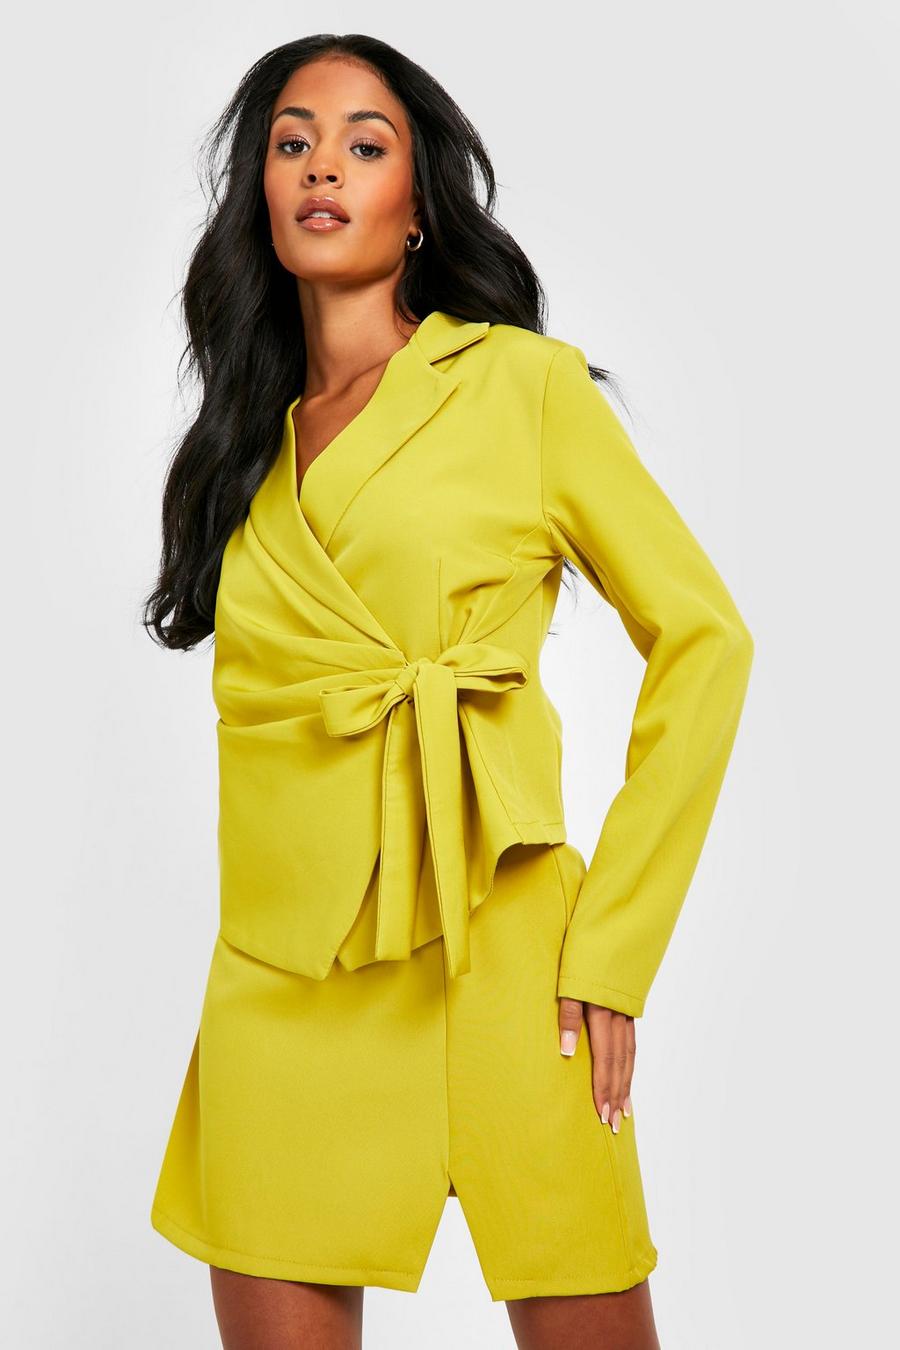 ירקרק giallo חצאית מיני עם שסע, לנשים גבוהות